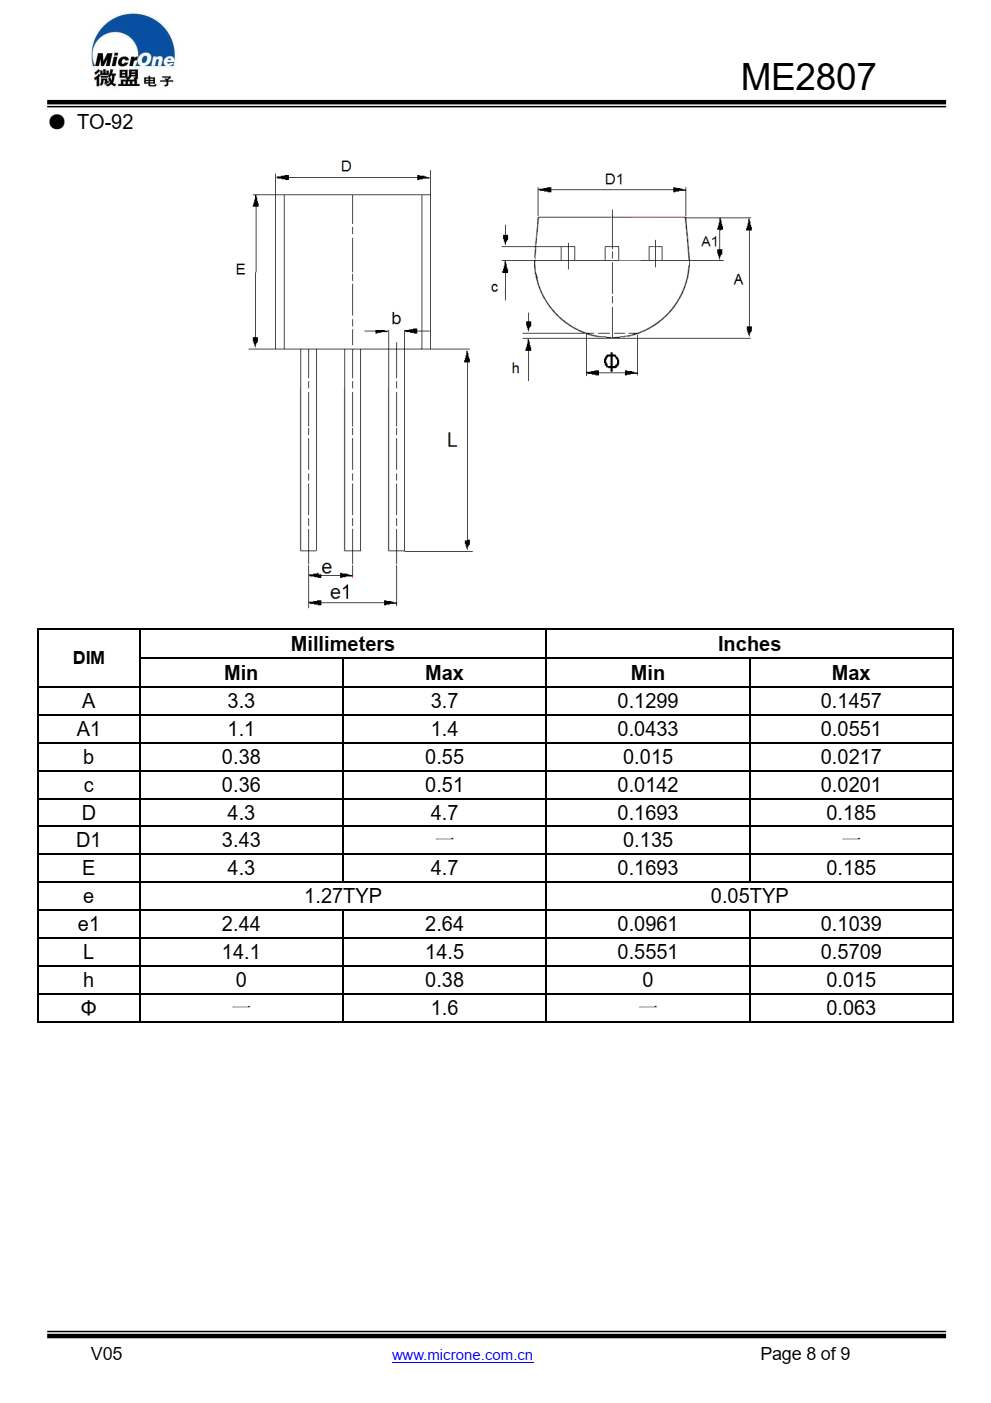 ME2807系列是一套三端低压开关  用CMOS实现的电源电压检测器  技术系列中的每个电压检测器